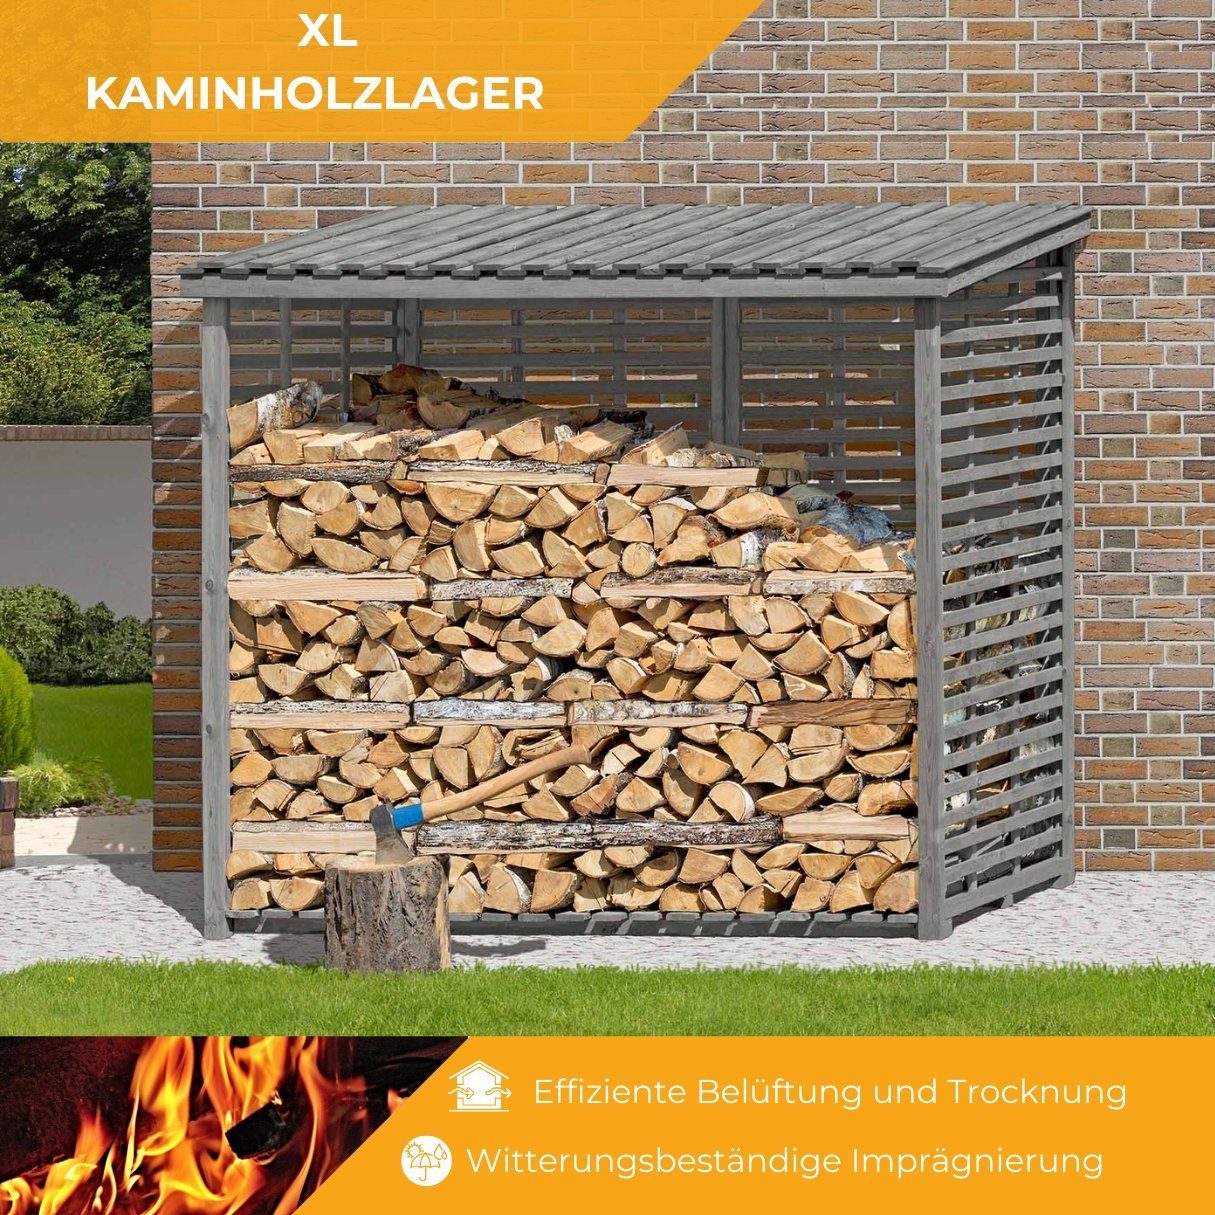 FLAMMO Mega-Holz BxTxH:237x114x203 cm mit Kaminholzregal Rückwand, Kaminholzregal XL